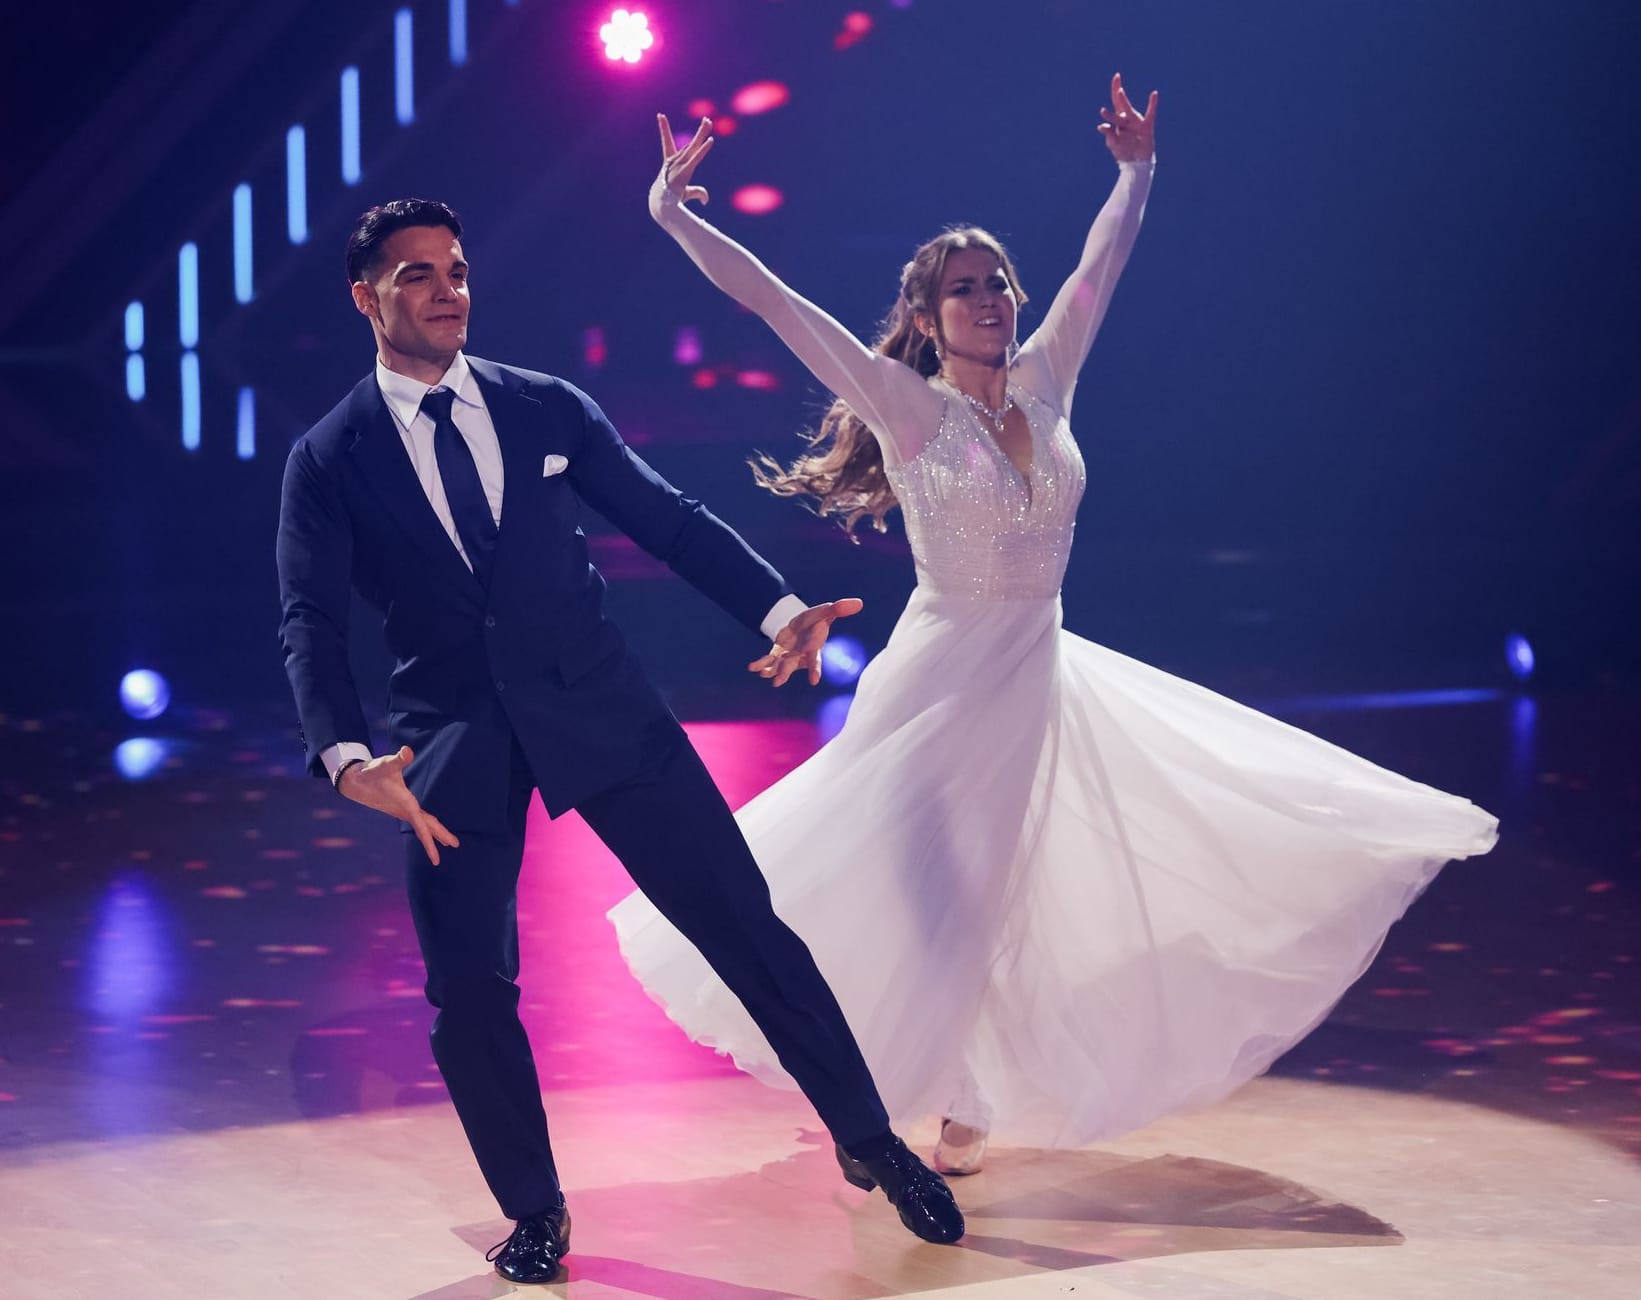 Stefano Zarrella und Mariia Maksina tanzten einen Langsamen Walzer.